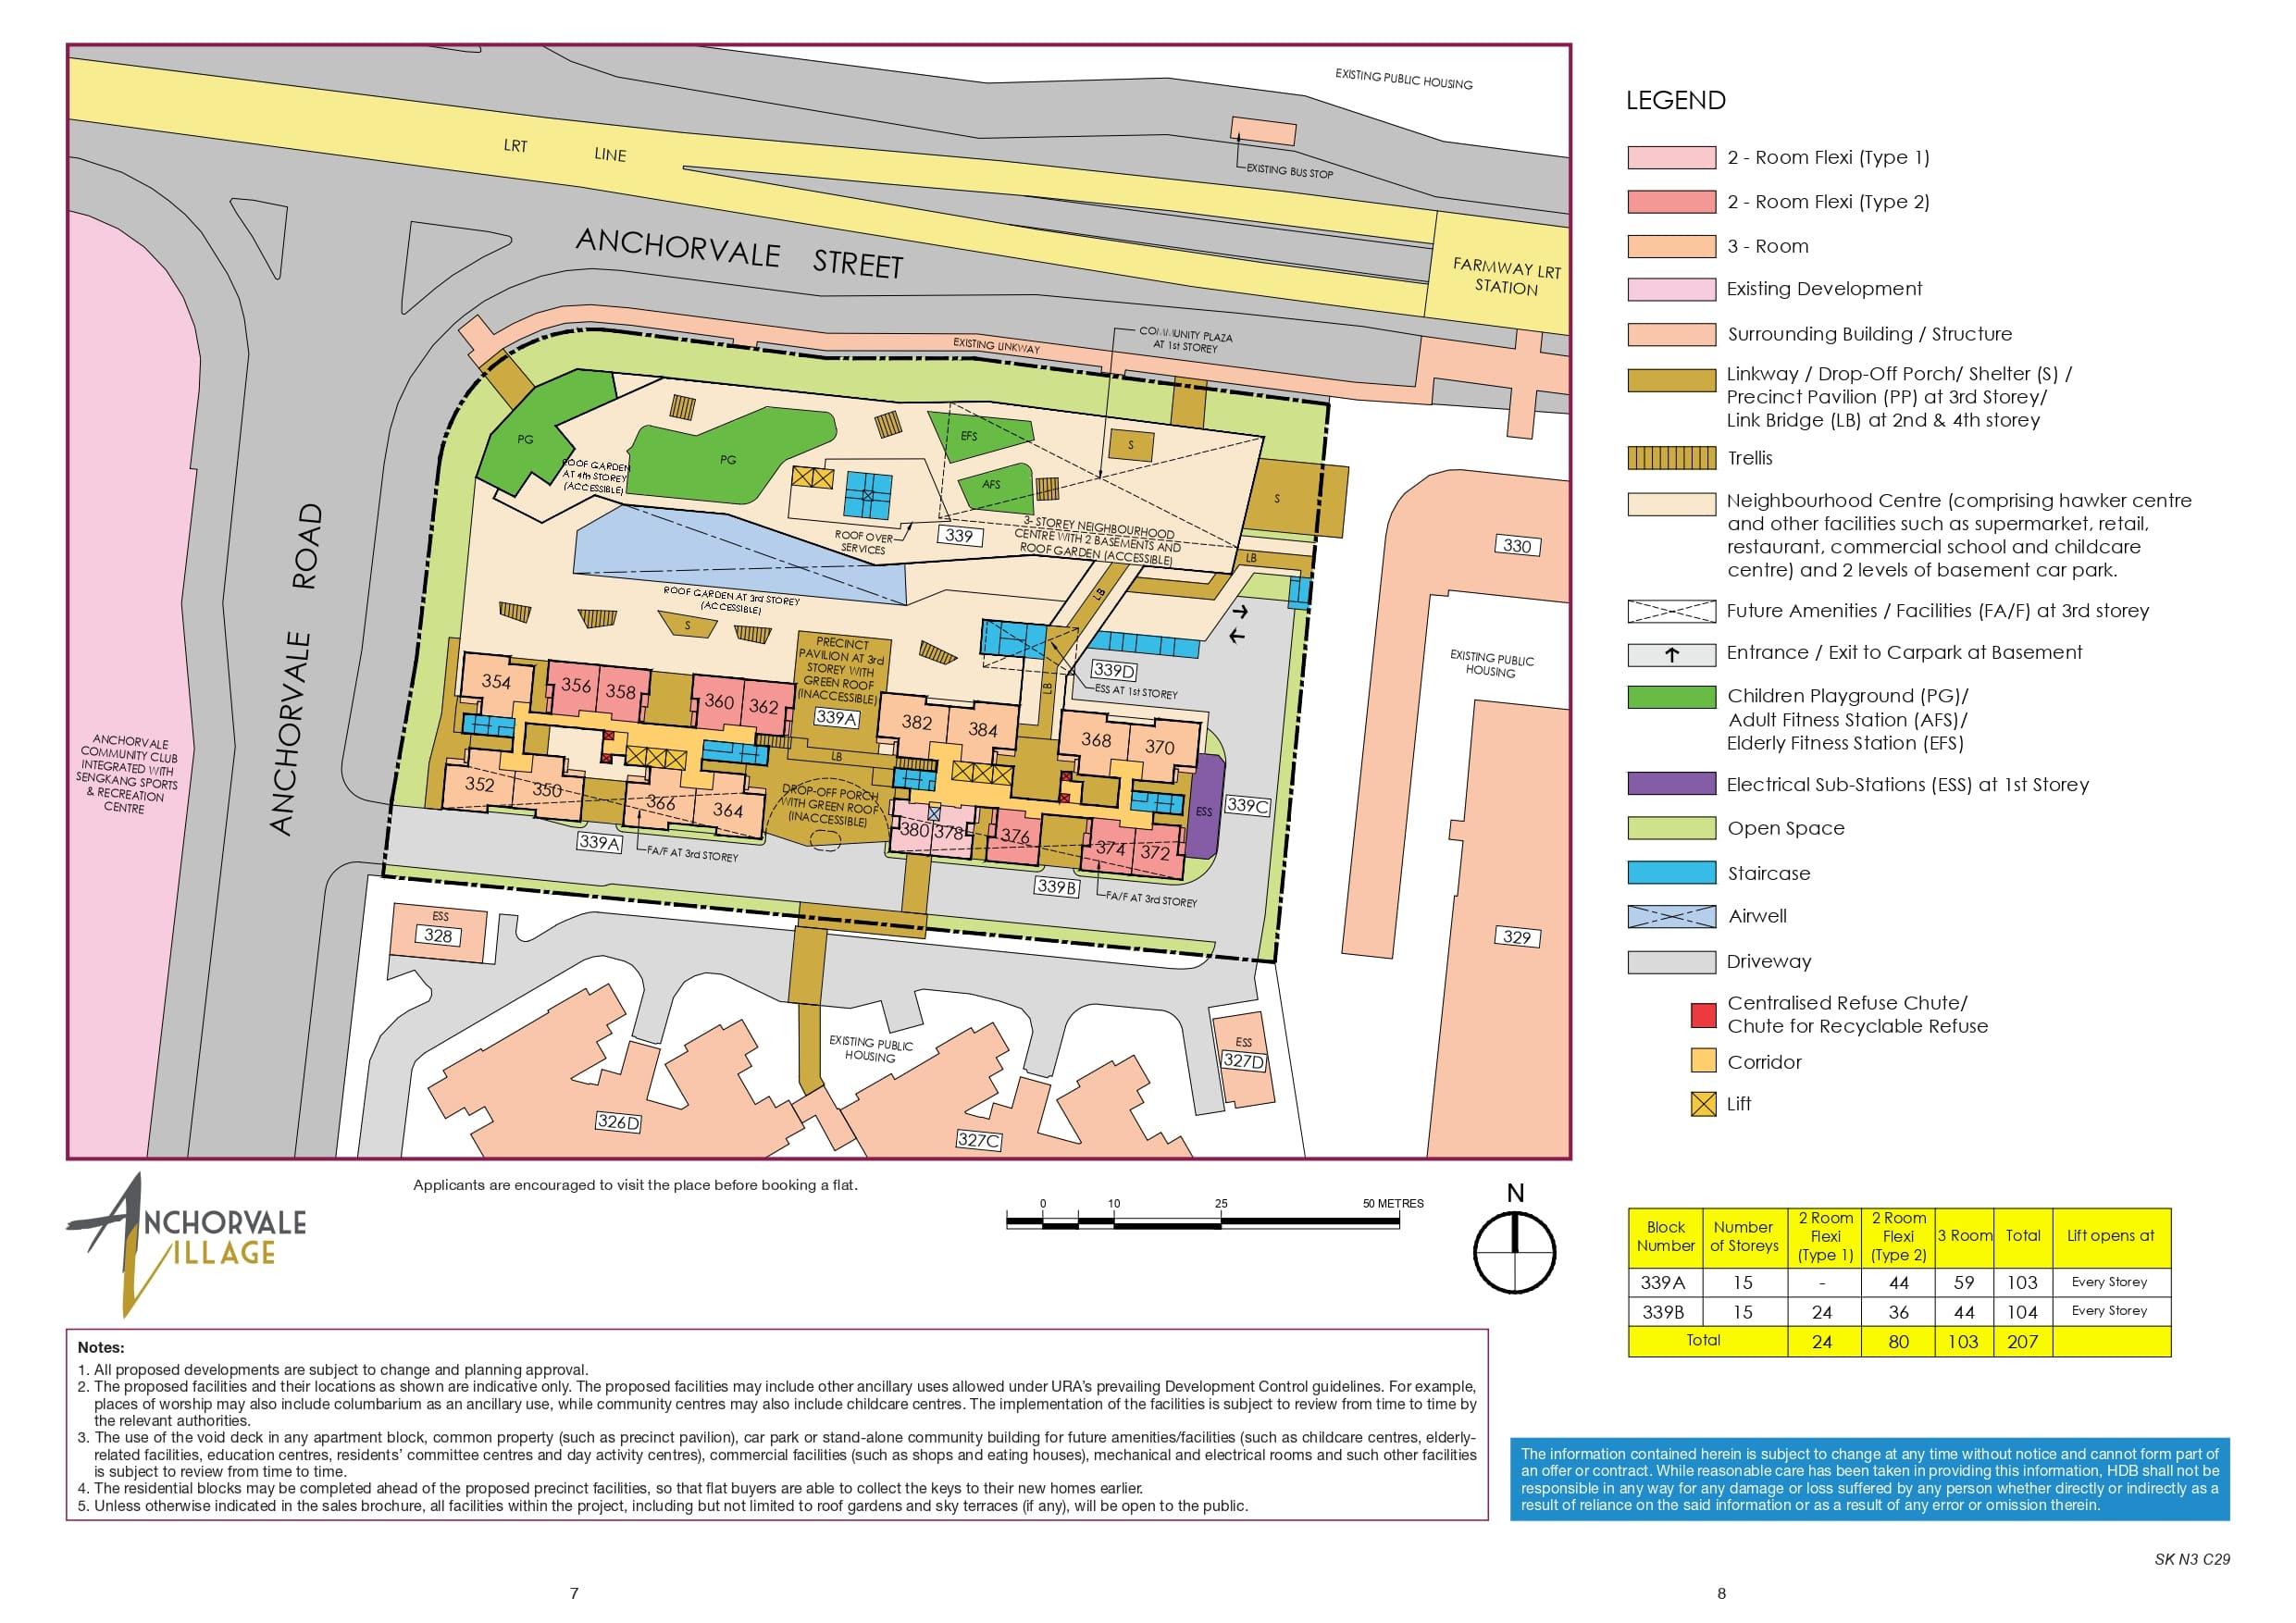 Anchorvale Village site-plan